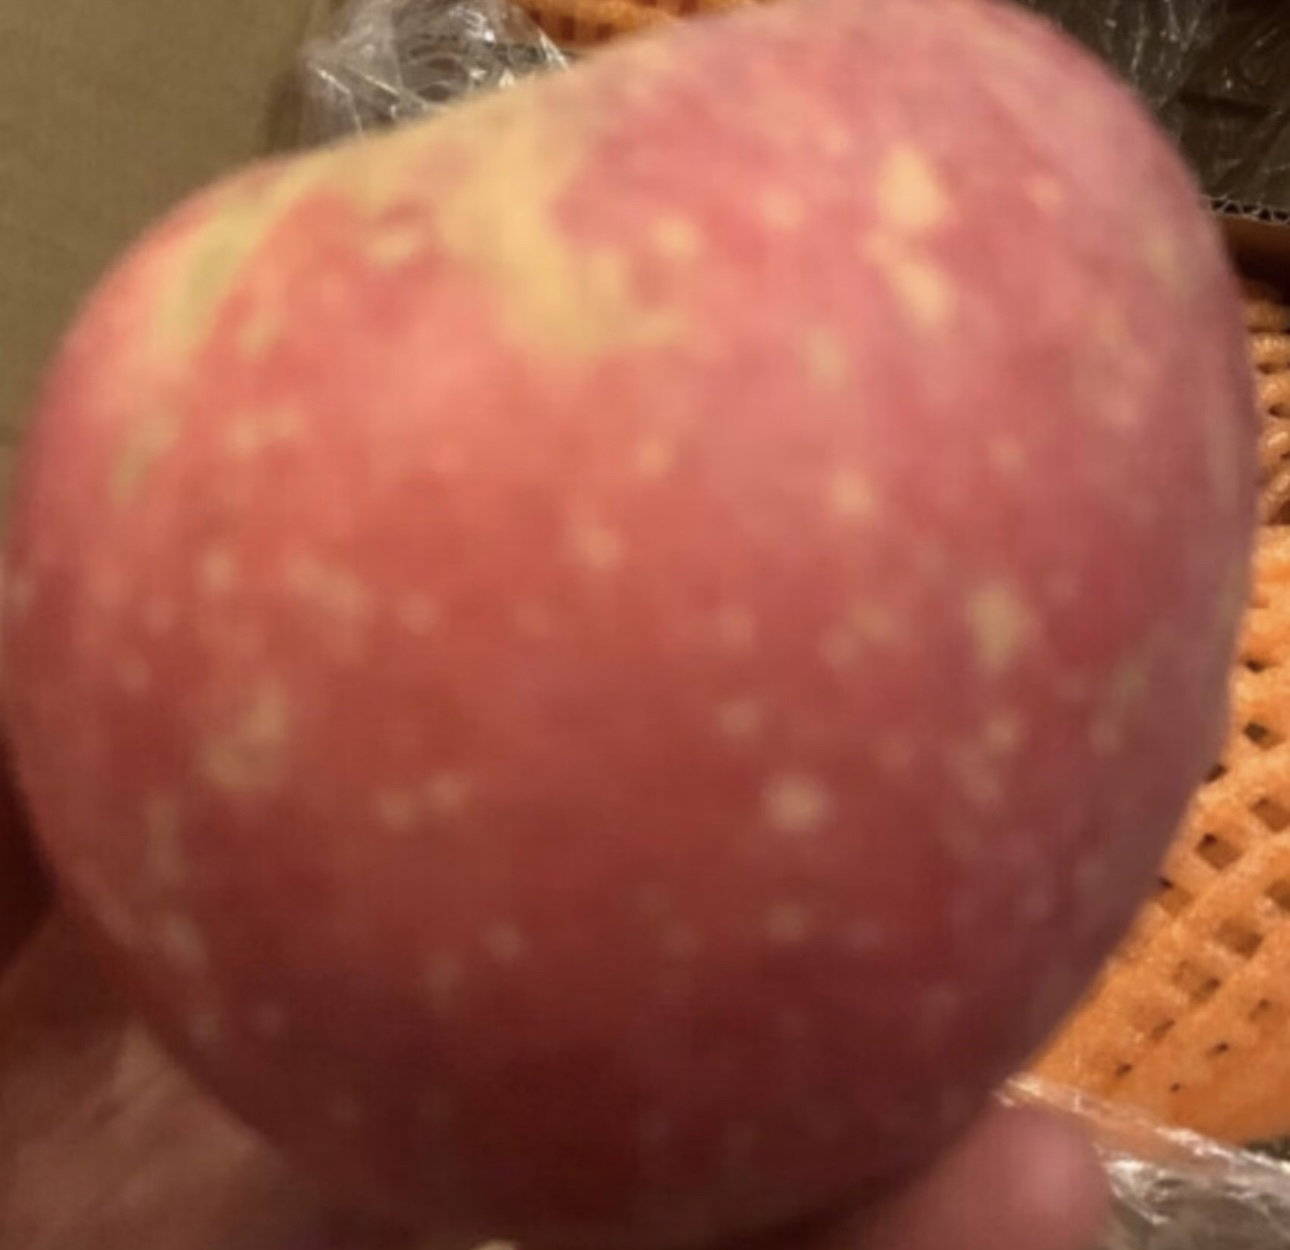 [鲜贝达]山东烟台红富士苹果9斤装大果[80-85mm][净重8.5斤] 新鲜水果晒单图